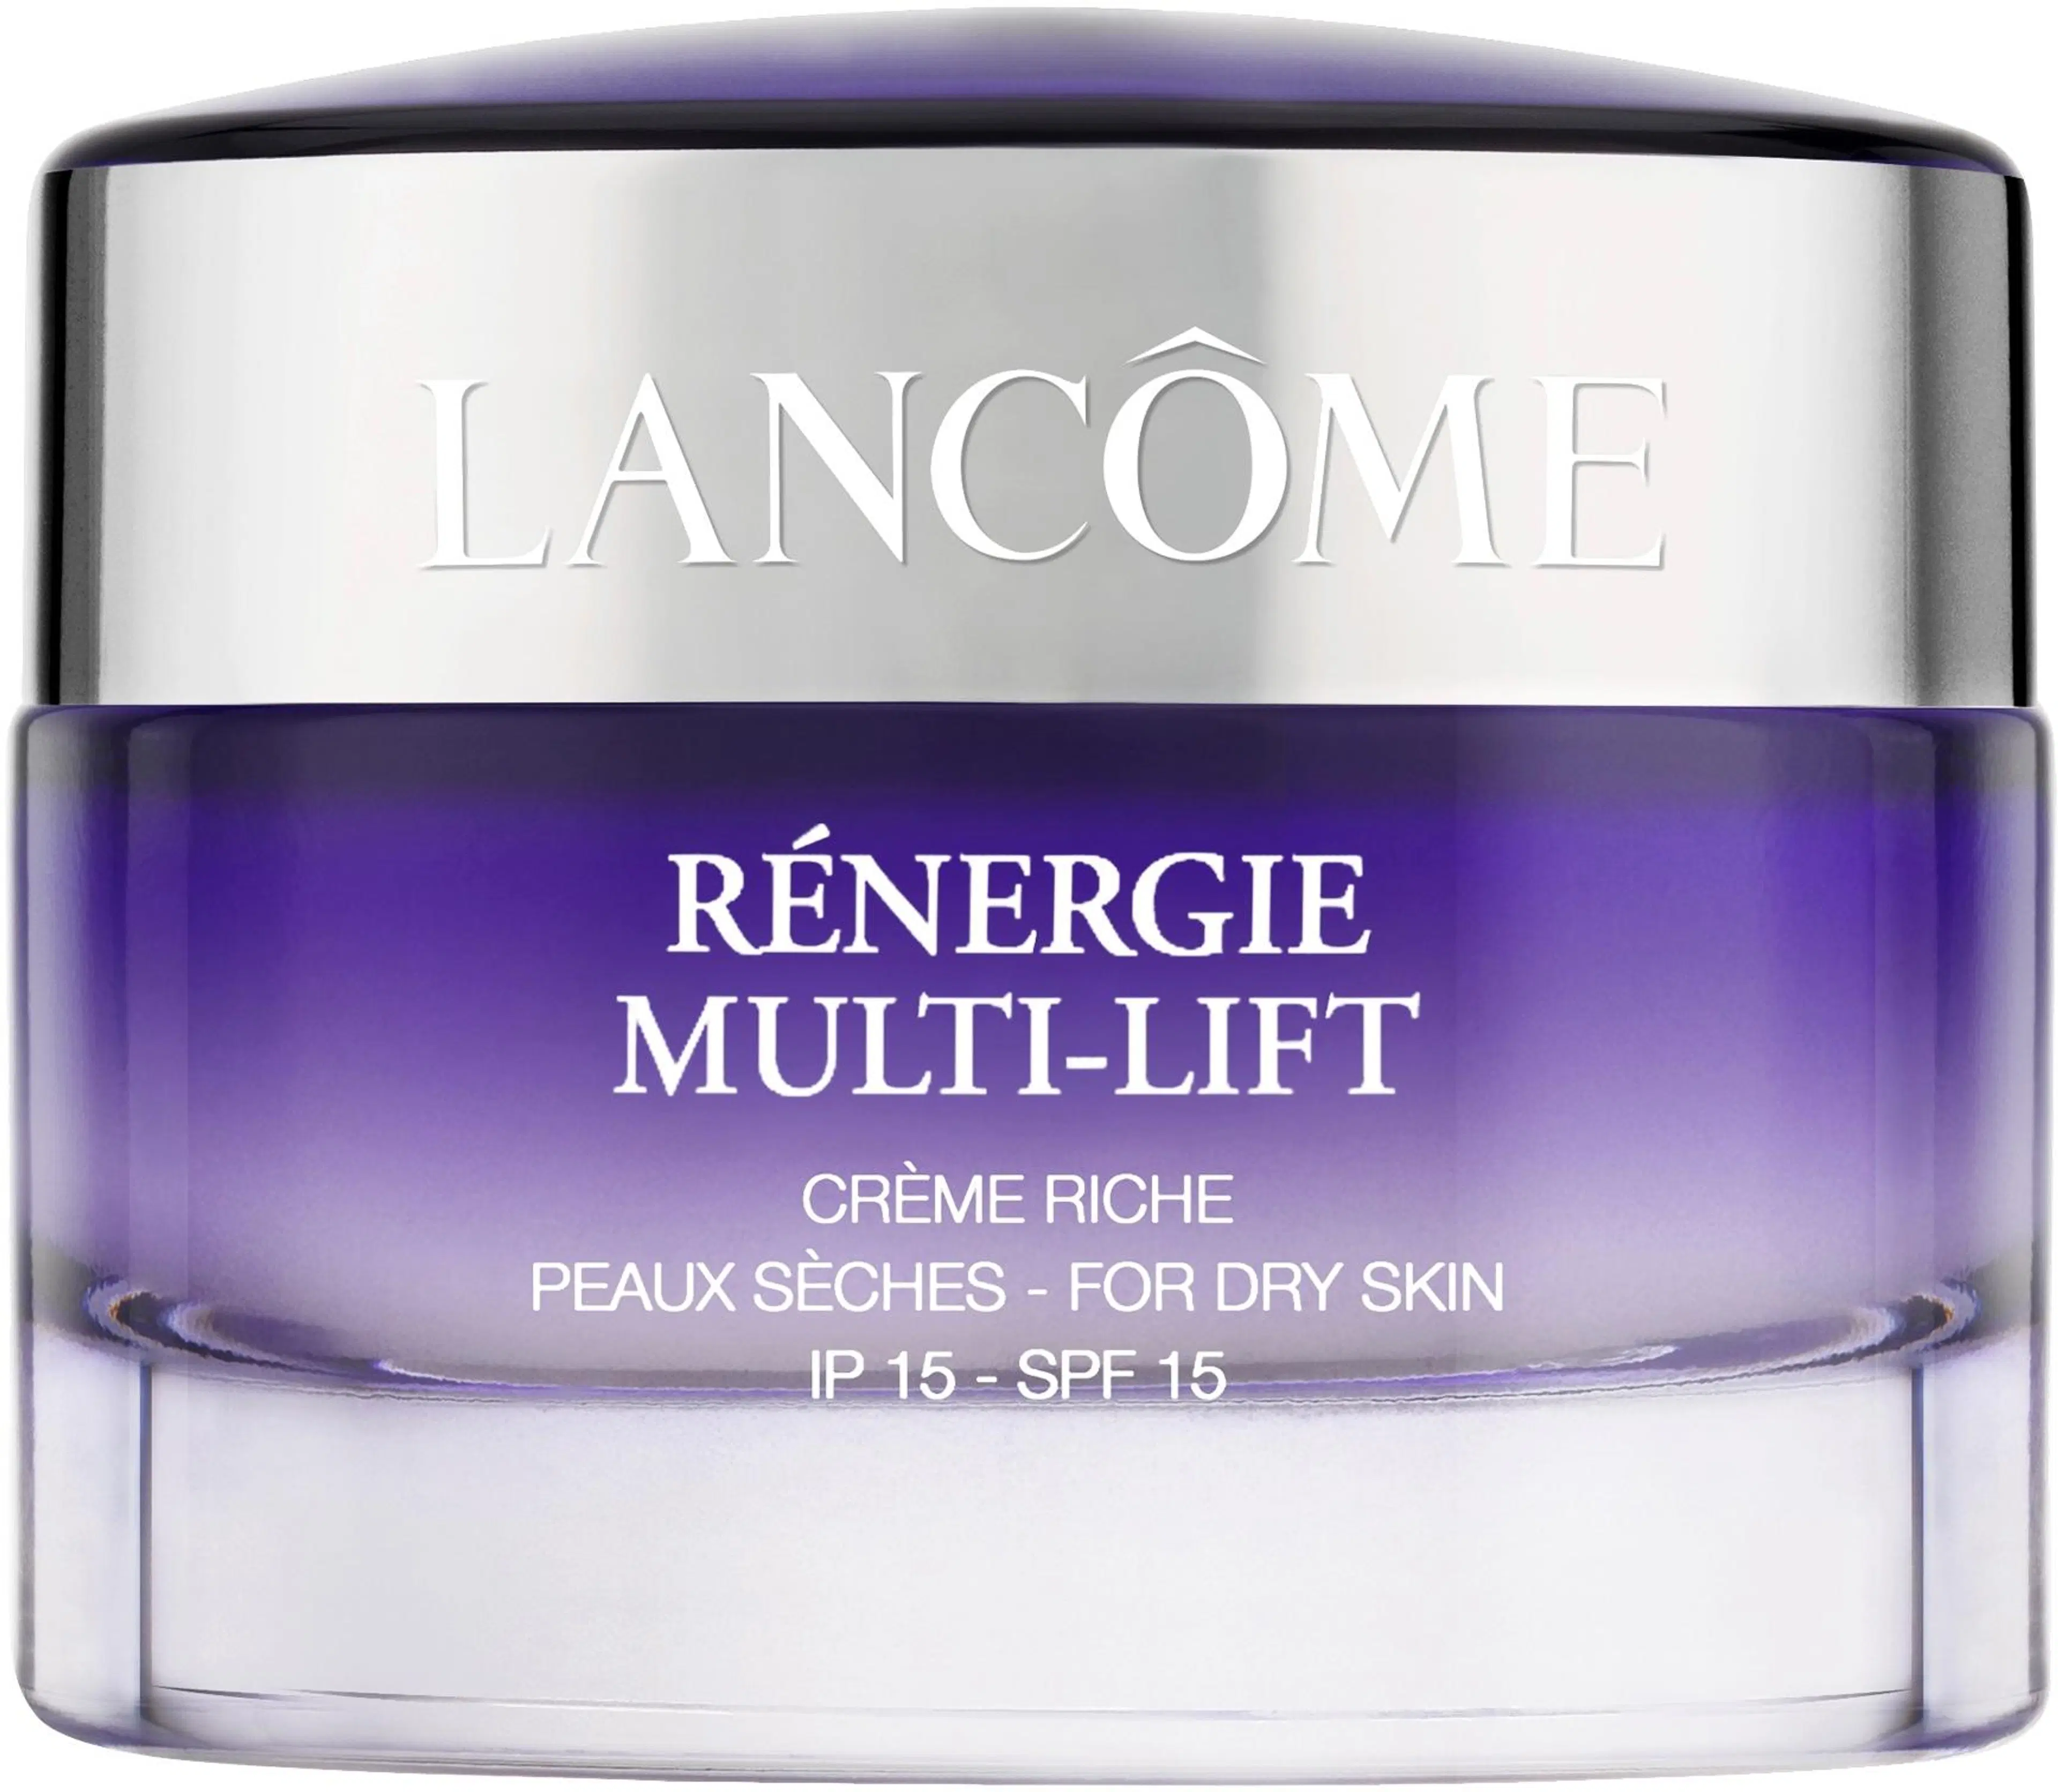 Lancôme Rénergie Multi-Lift Creme Riche SPF15 päivävoide 50 ml